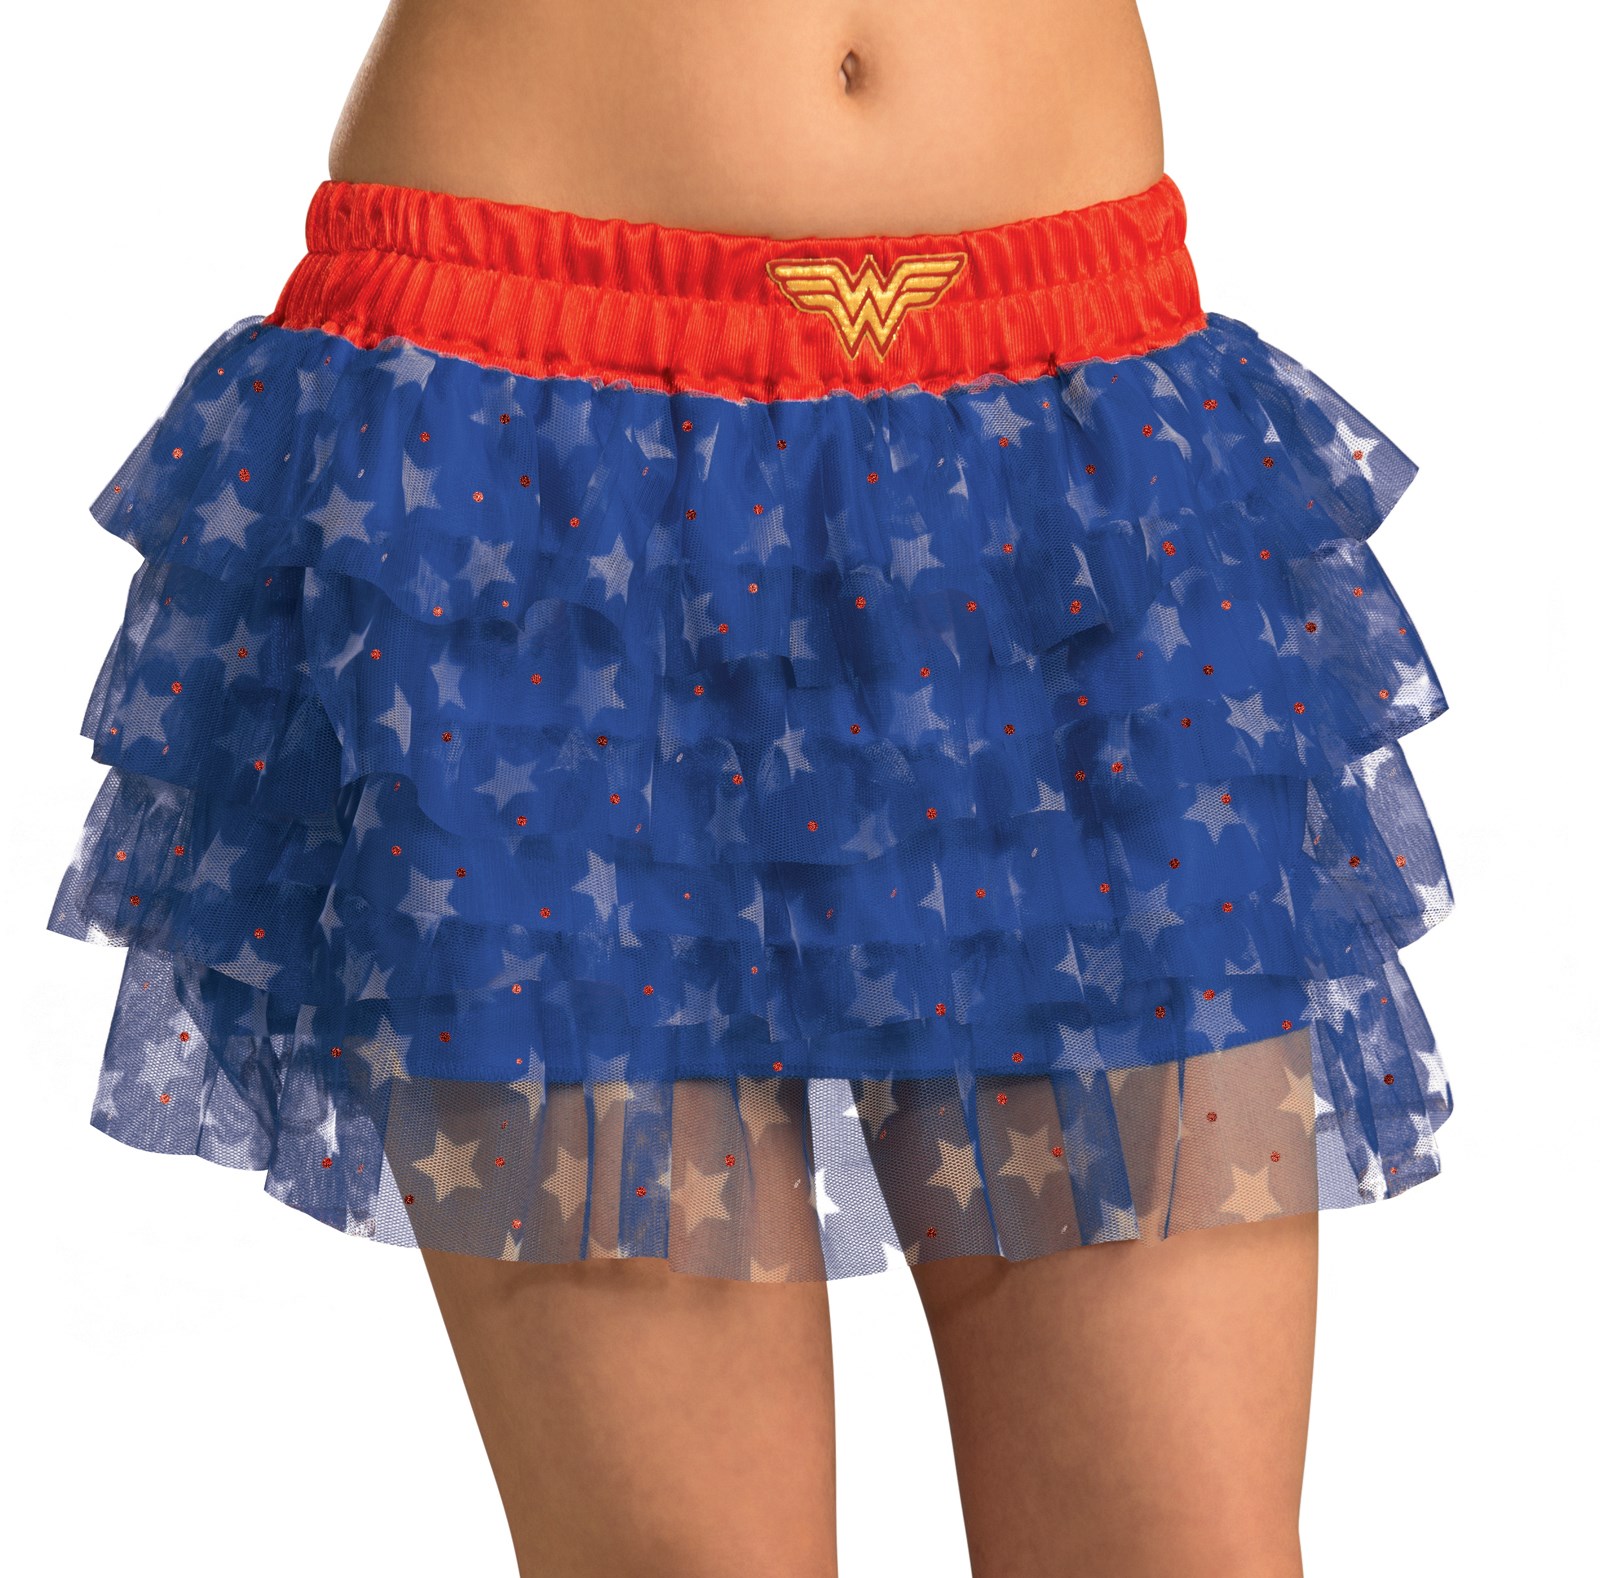 Adult Wonder Woman Tutu Skirt